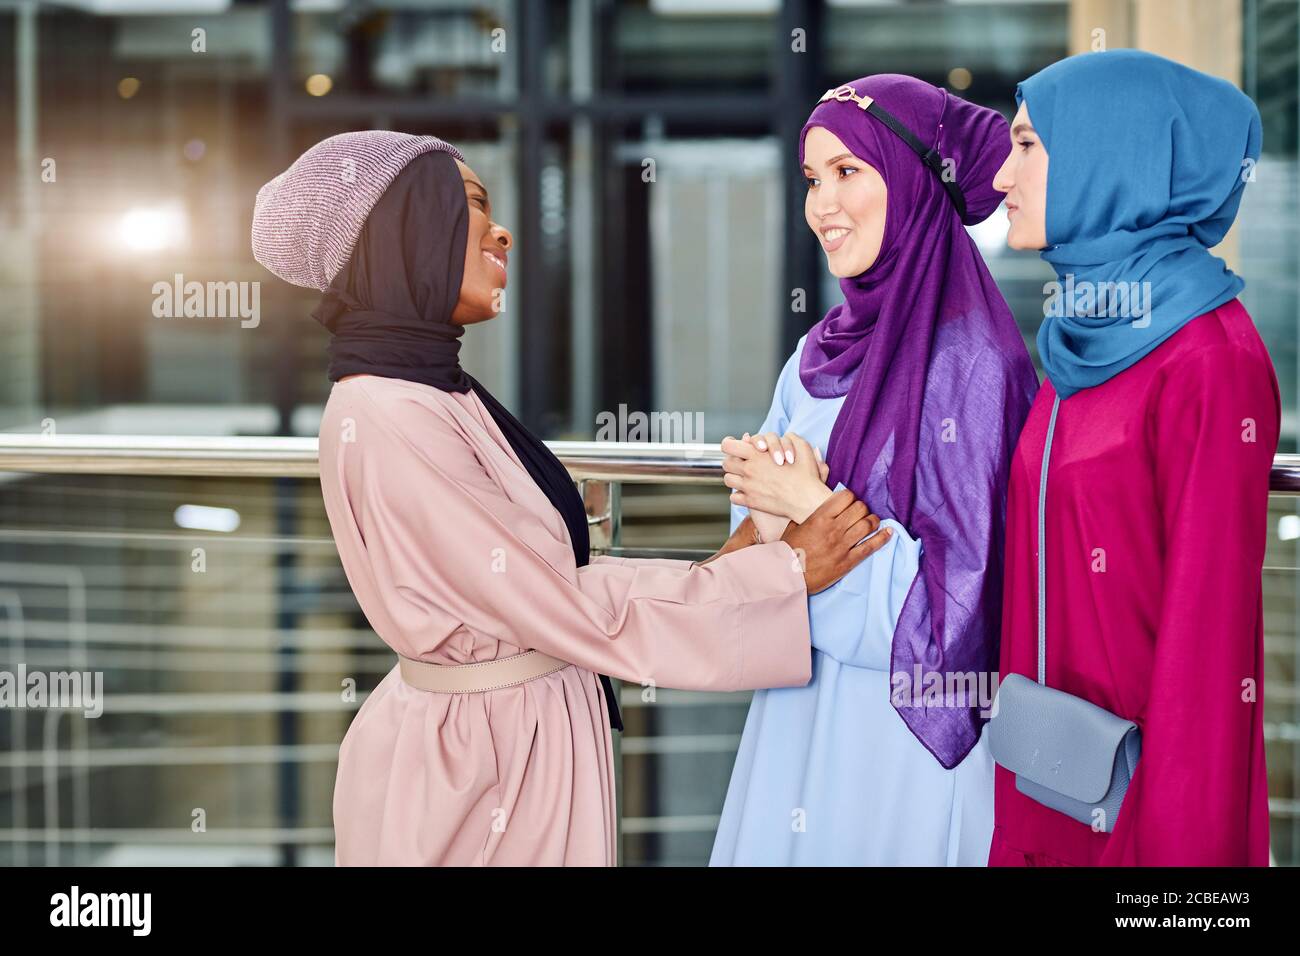 Ritratto di gruppo multirazziale di donne musulmane vestite in nazionale abiti e fiabe di colori brillanti che parlano insieme in amichevole maner in piedi Foto Stock